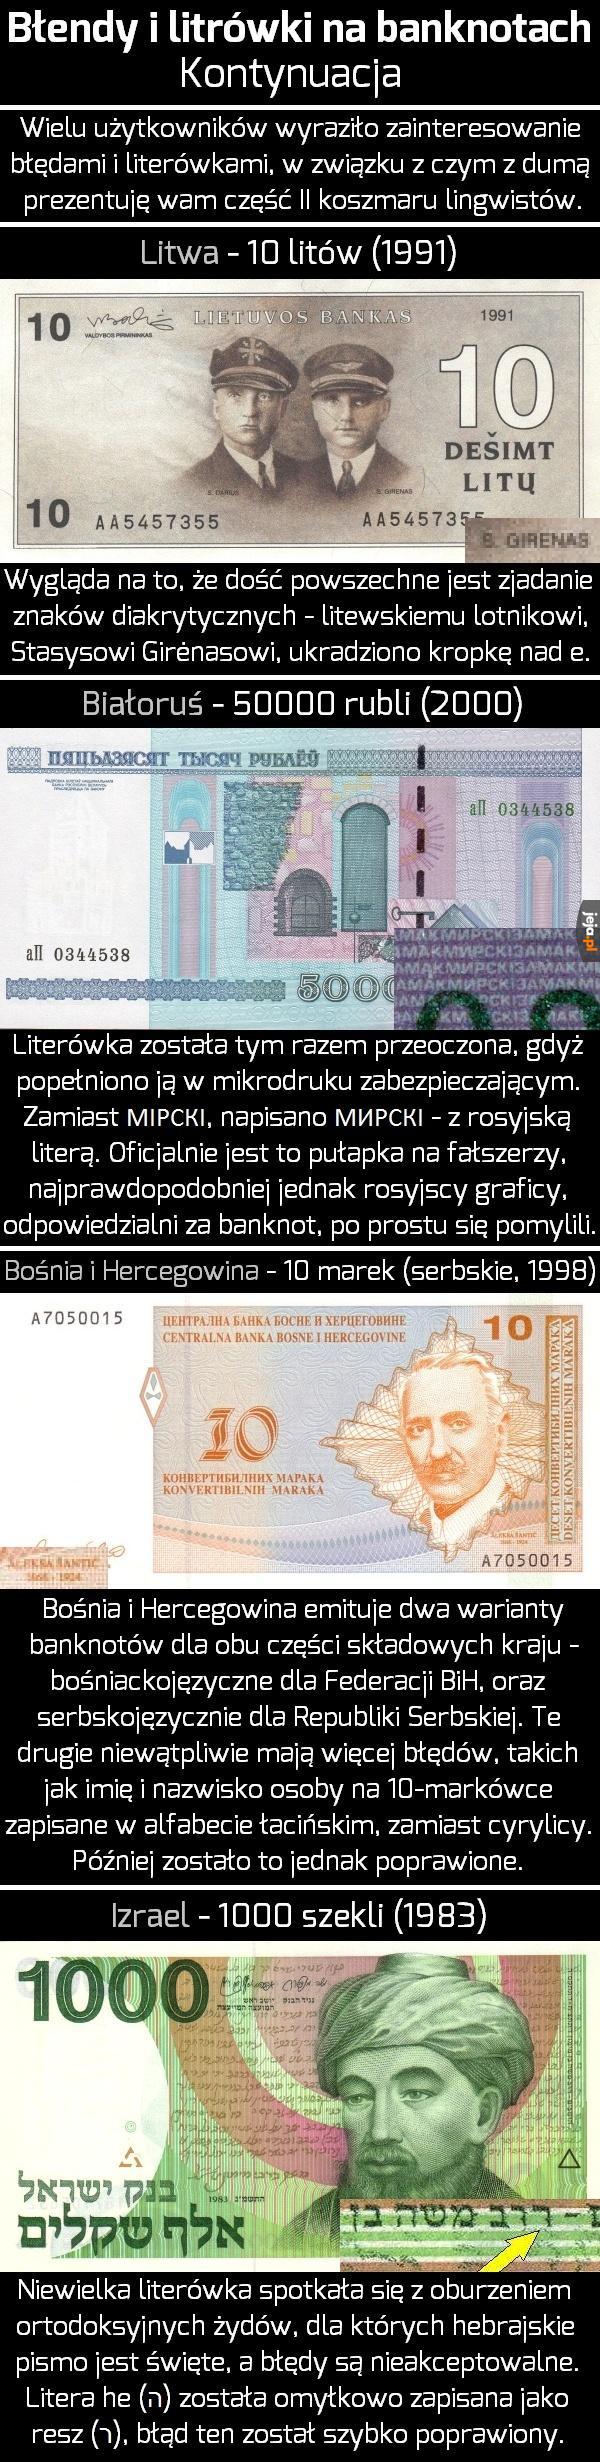 Błędy i literówki na banknotach - cz. II